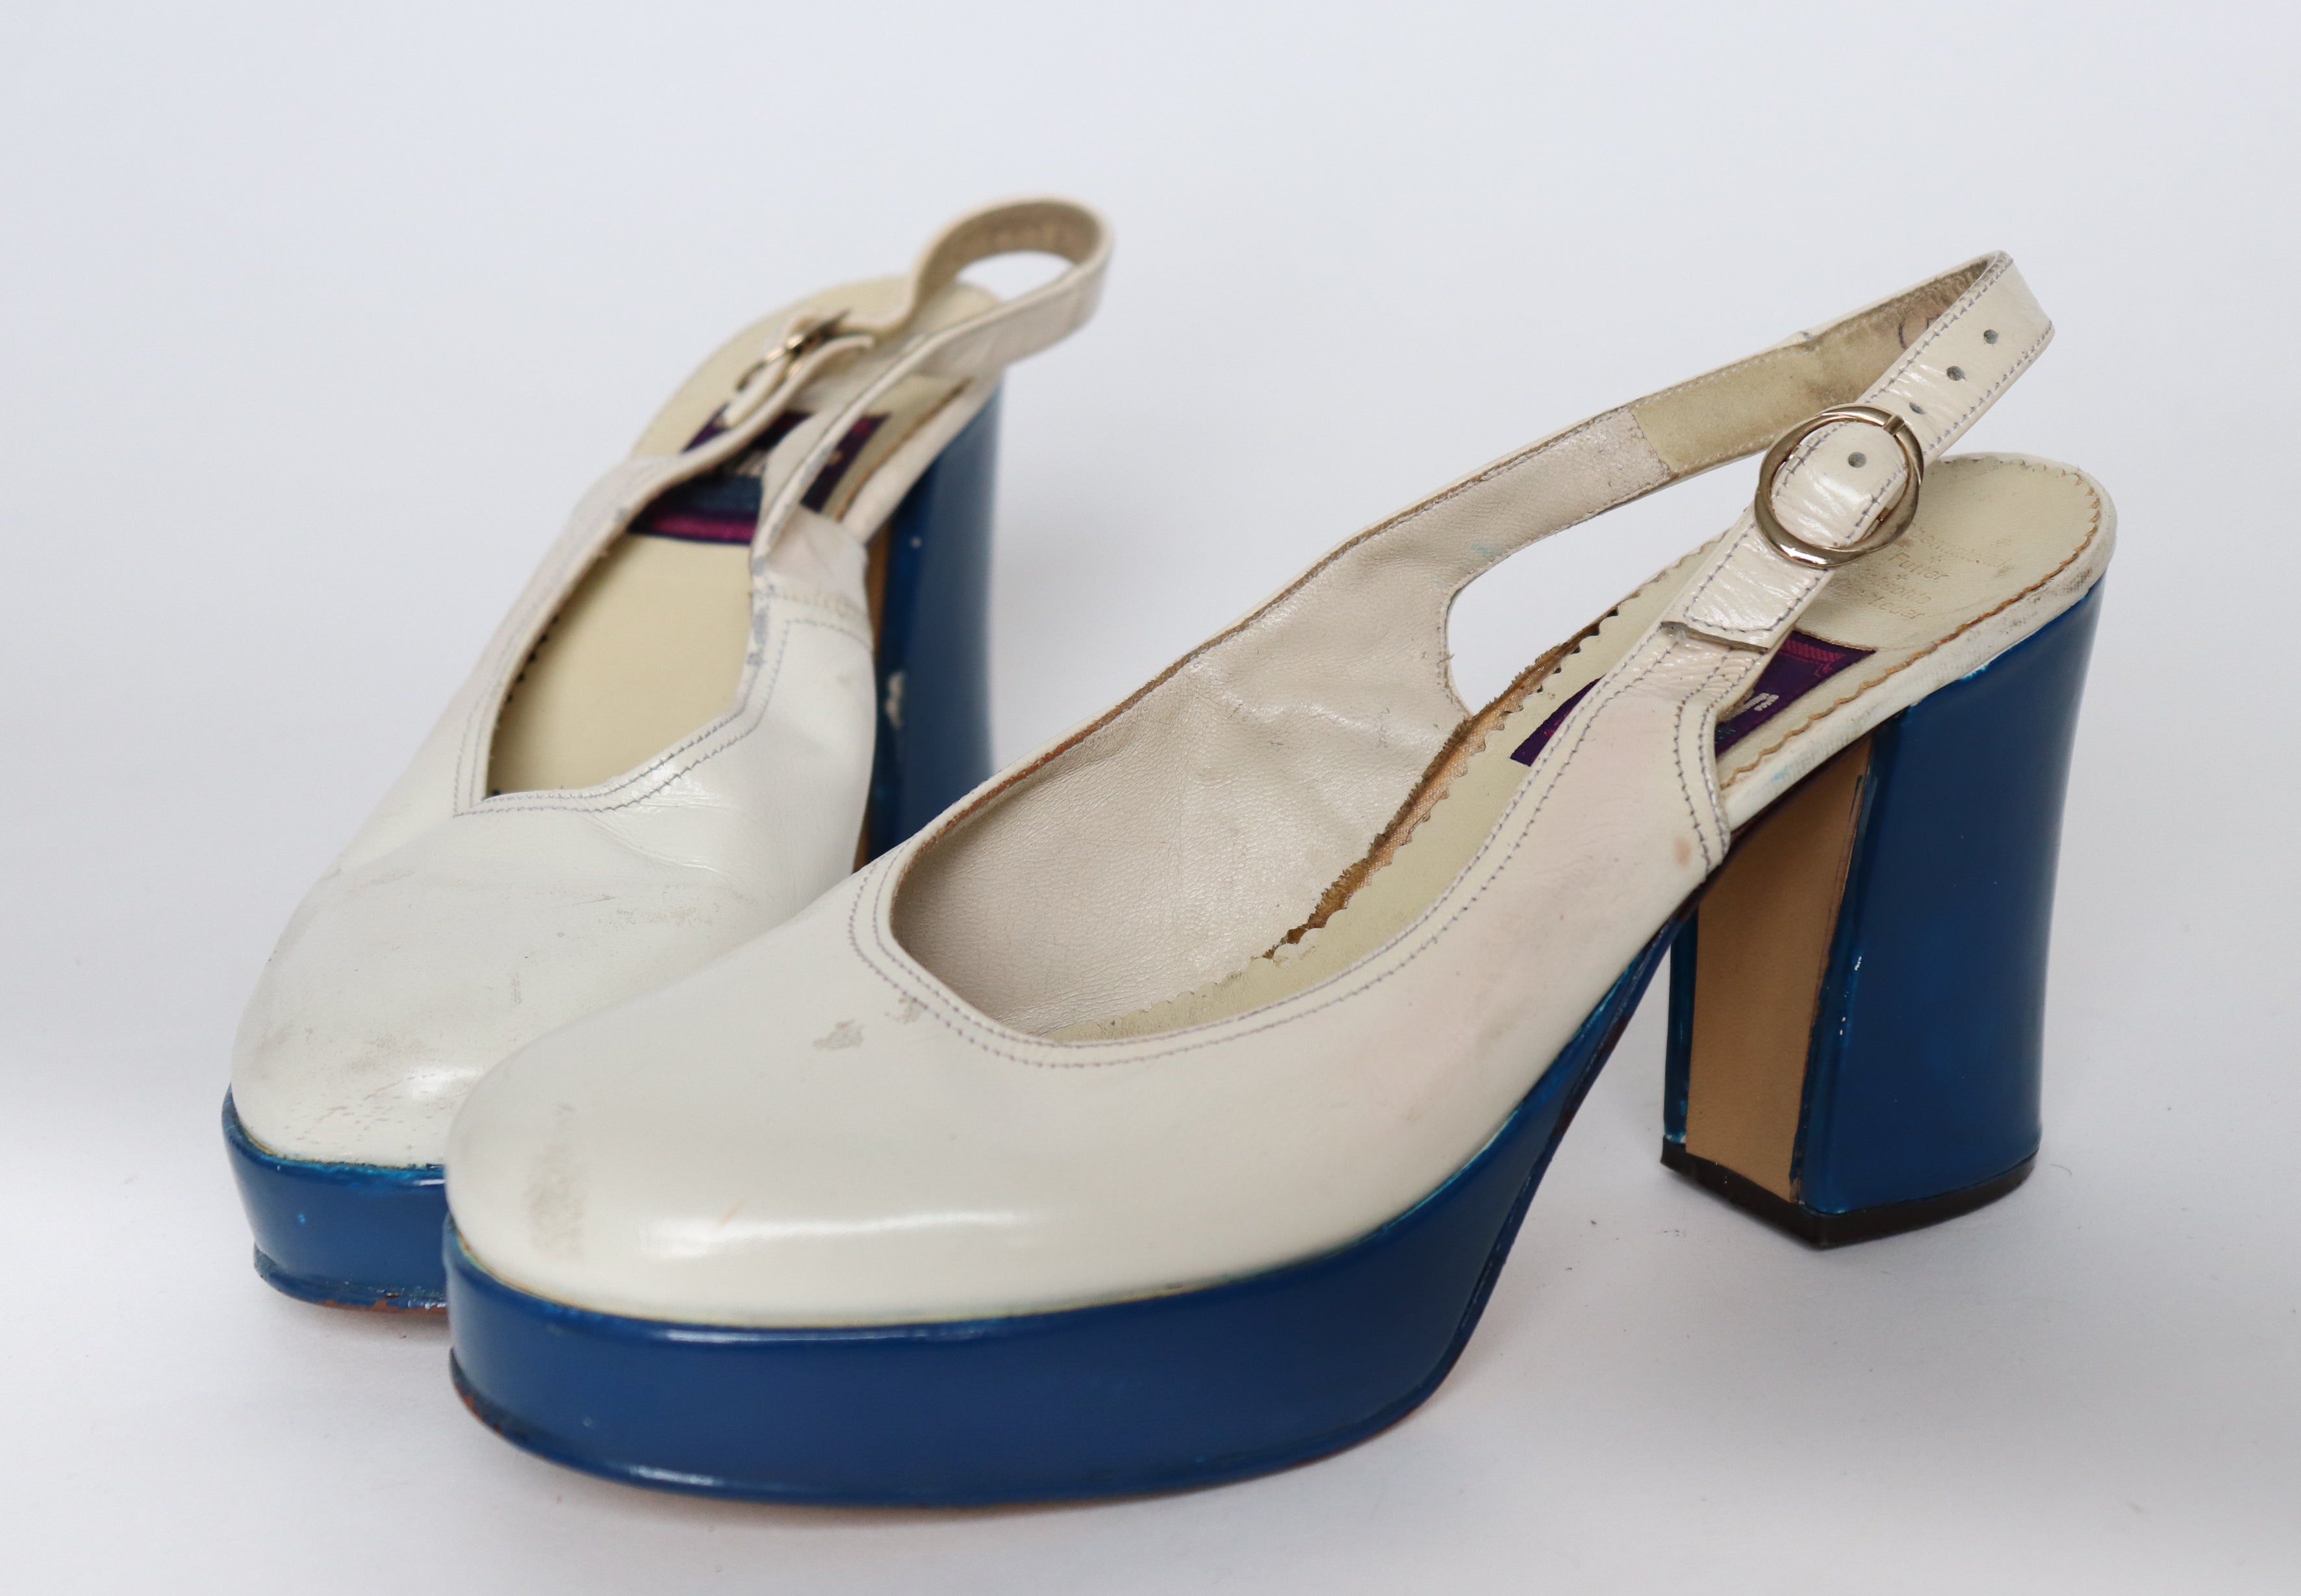 1970s Vintage Platform Shoes - White / Blue - Gabor - Fit  38 / UK 5